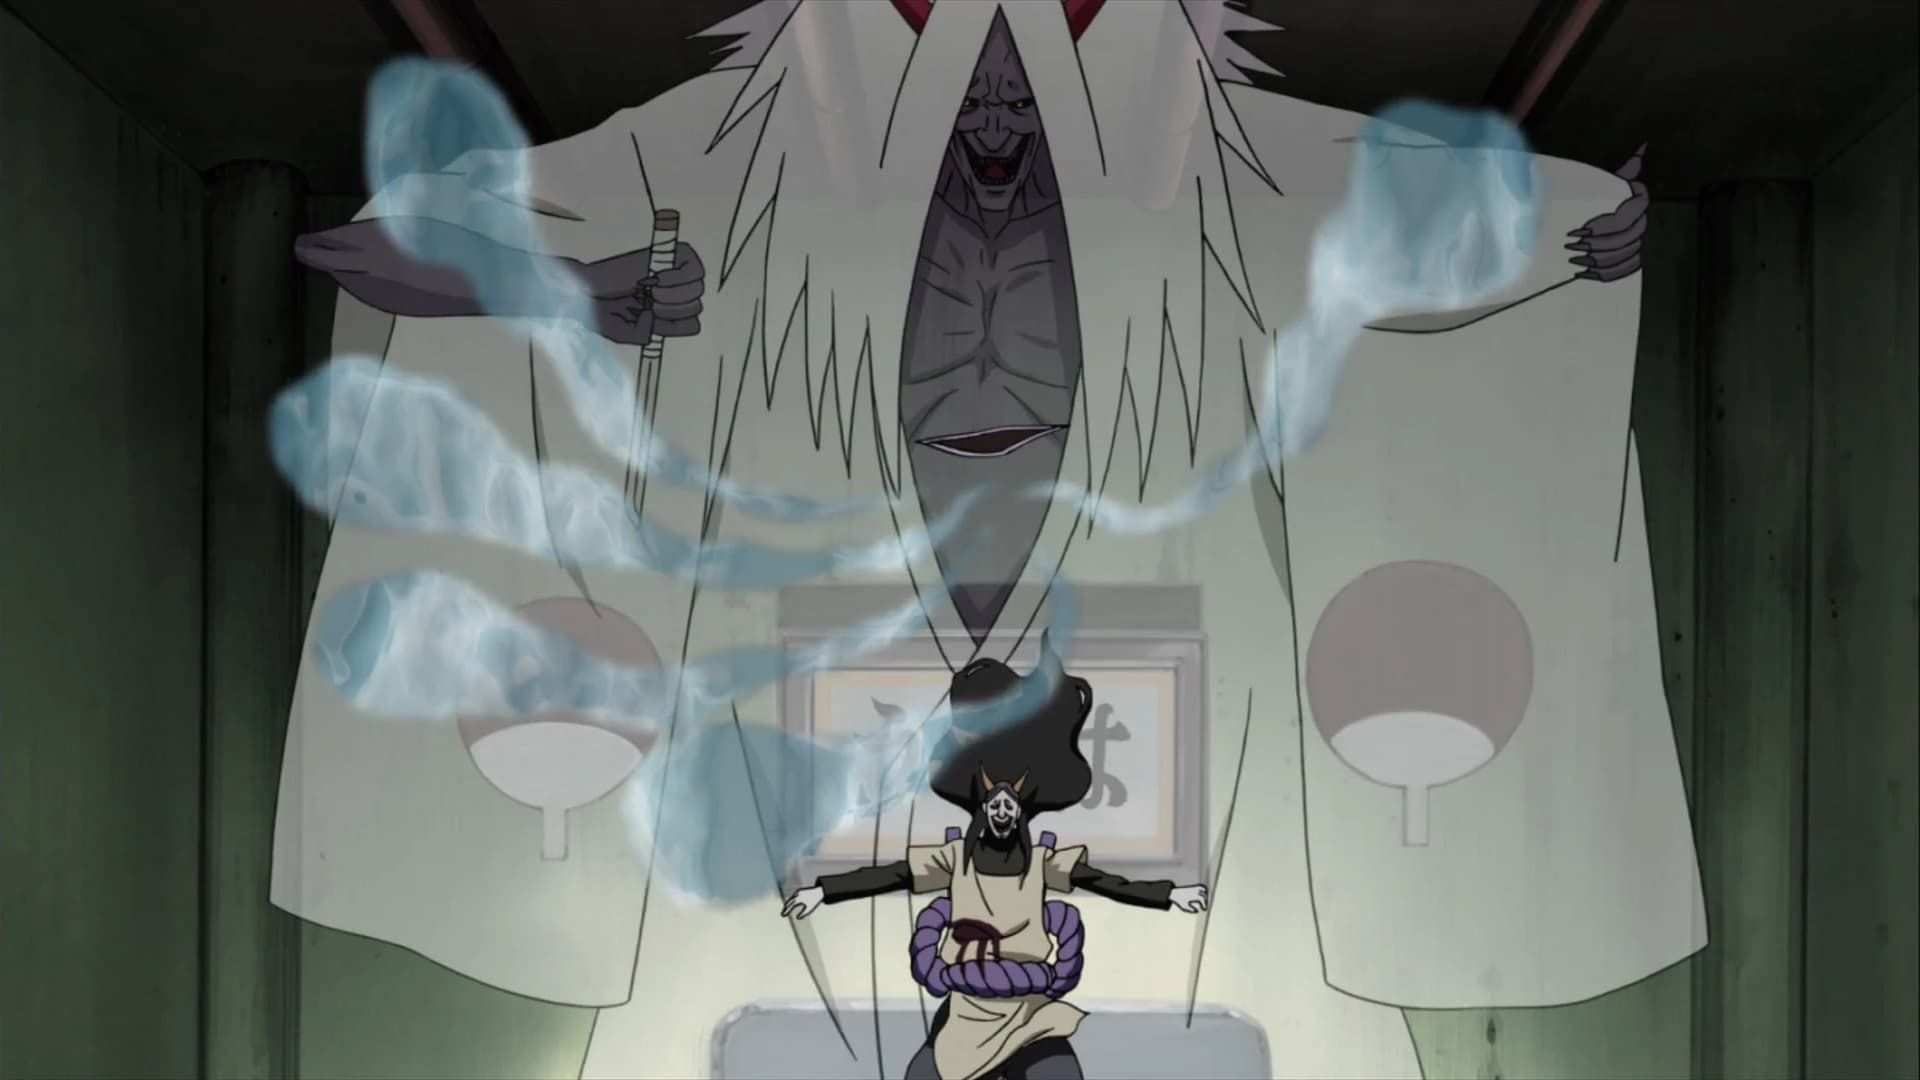 The Reaper Death Seal in Naruto brings forth the Shinigami (Image via Narutopedia)